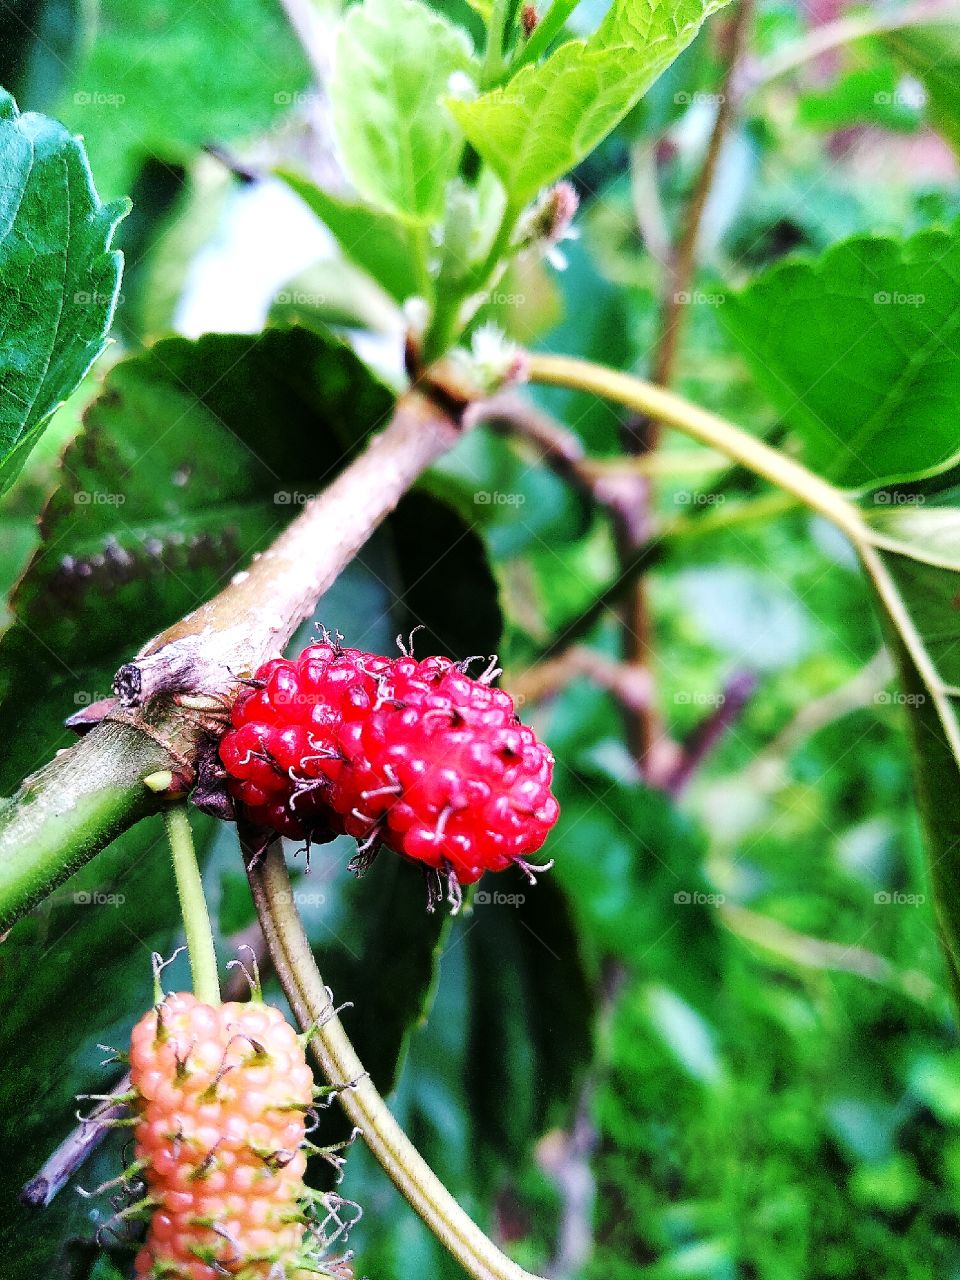 sweet mulberries